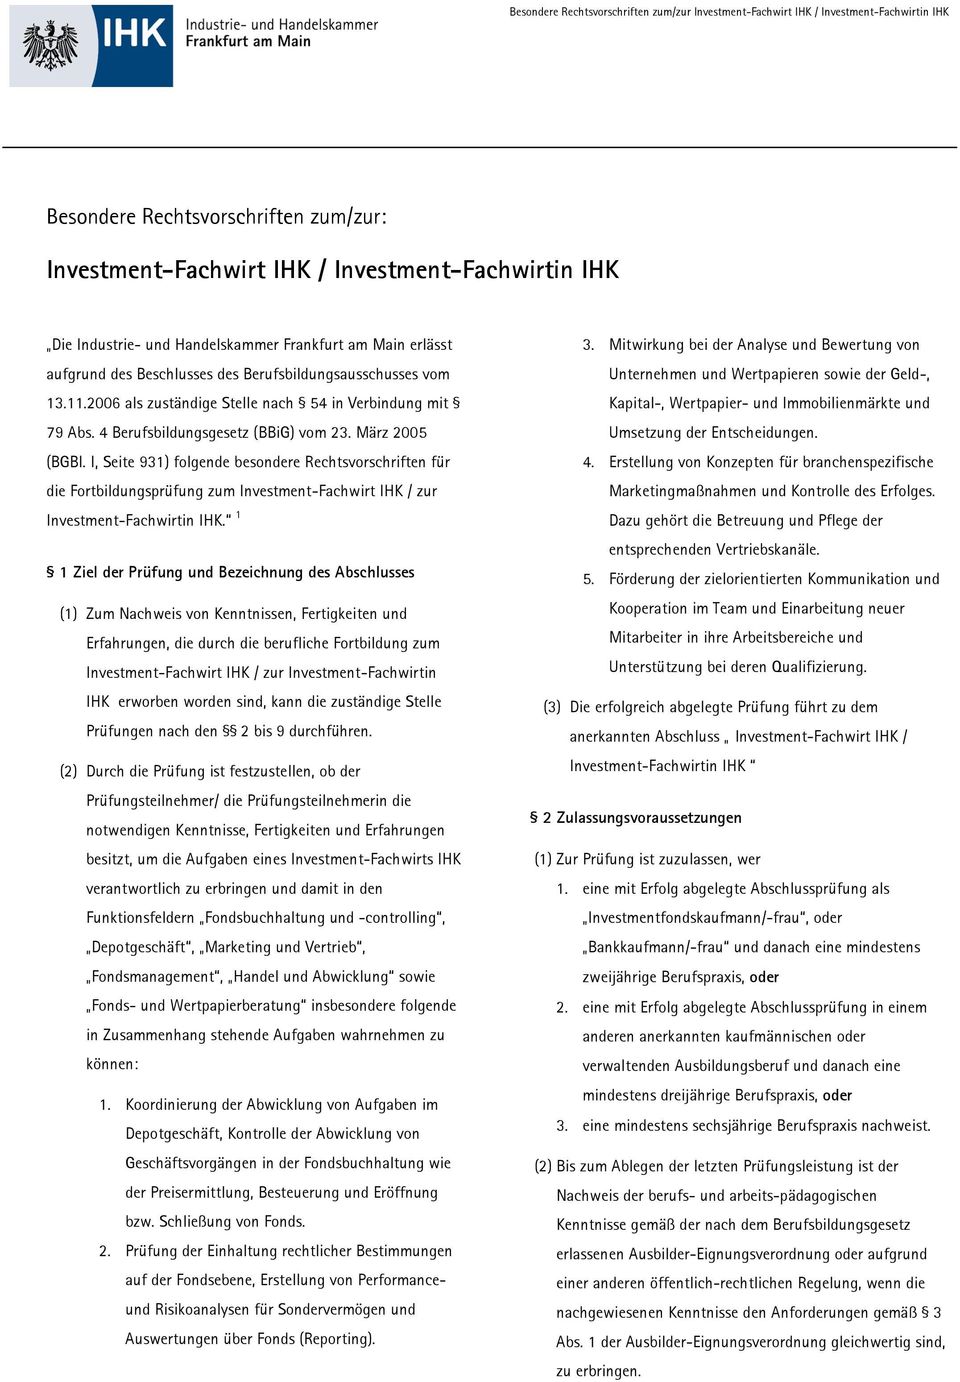 März 2005 (BGBl. I, Seite 931) folgende besondere Rechtsvorschriften für die Fortbildungsprüfung zum Investment-Fachwirt / zur Investment-Fachwirtin.